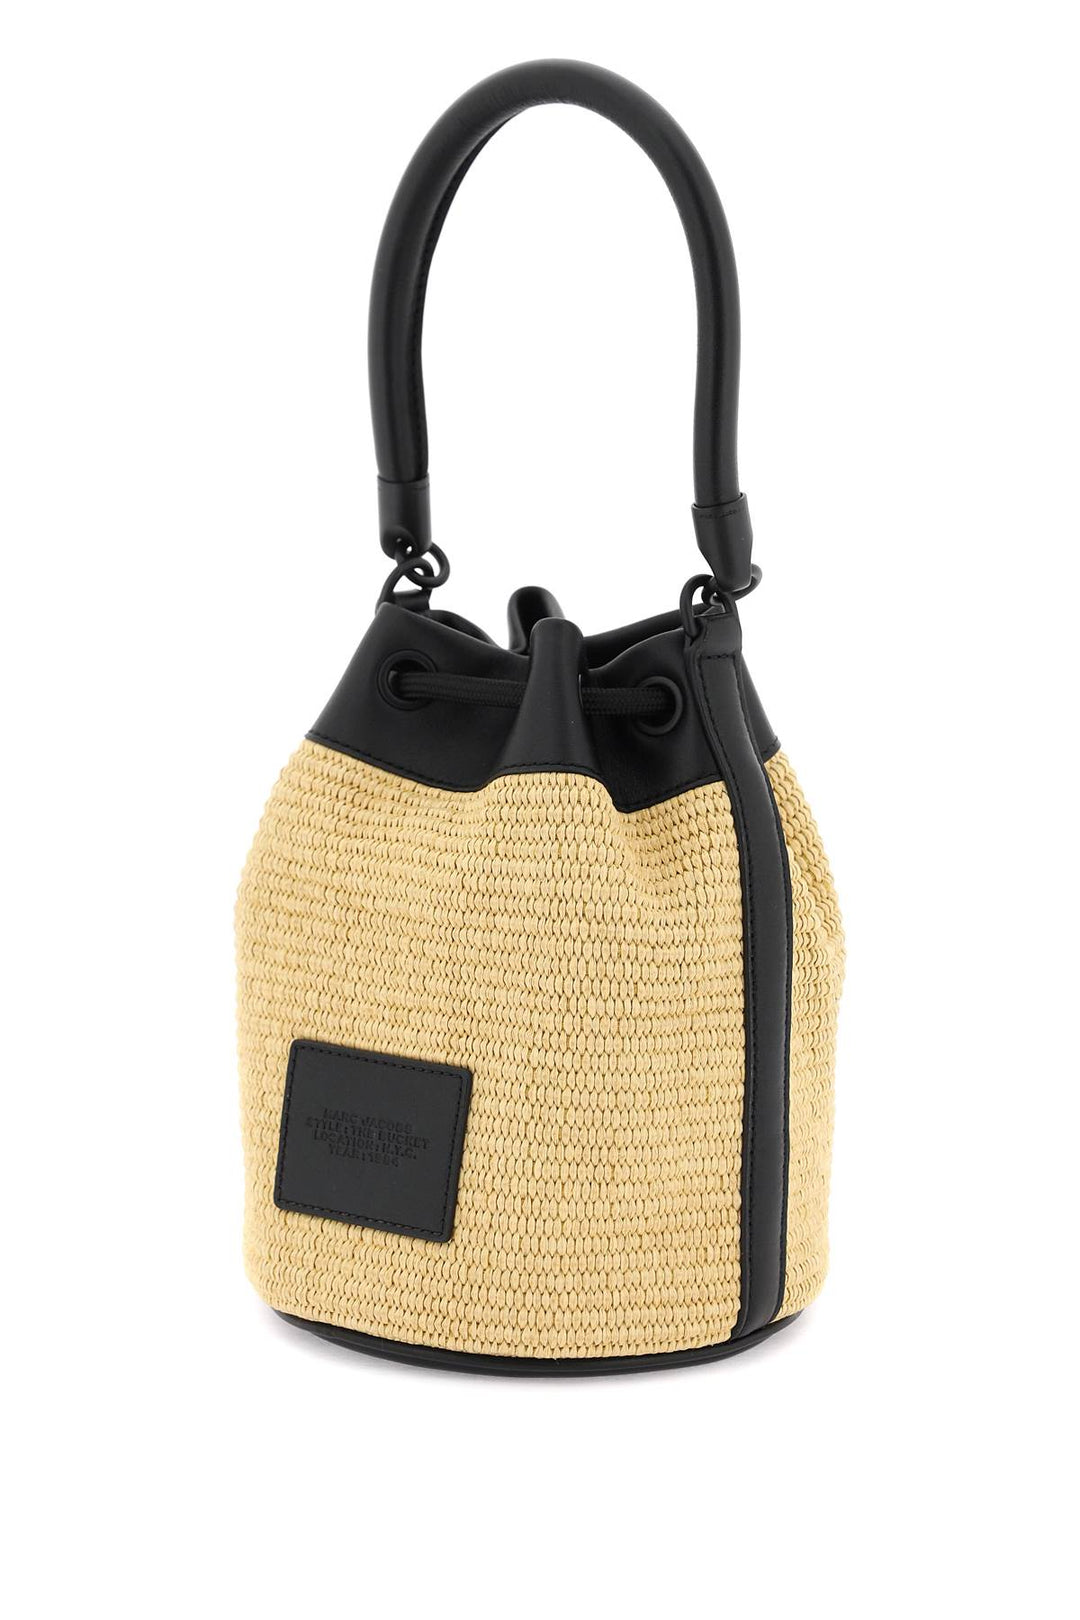 Borsa 'The Woven Bucket Bag' - Marc Jacobs - Donna